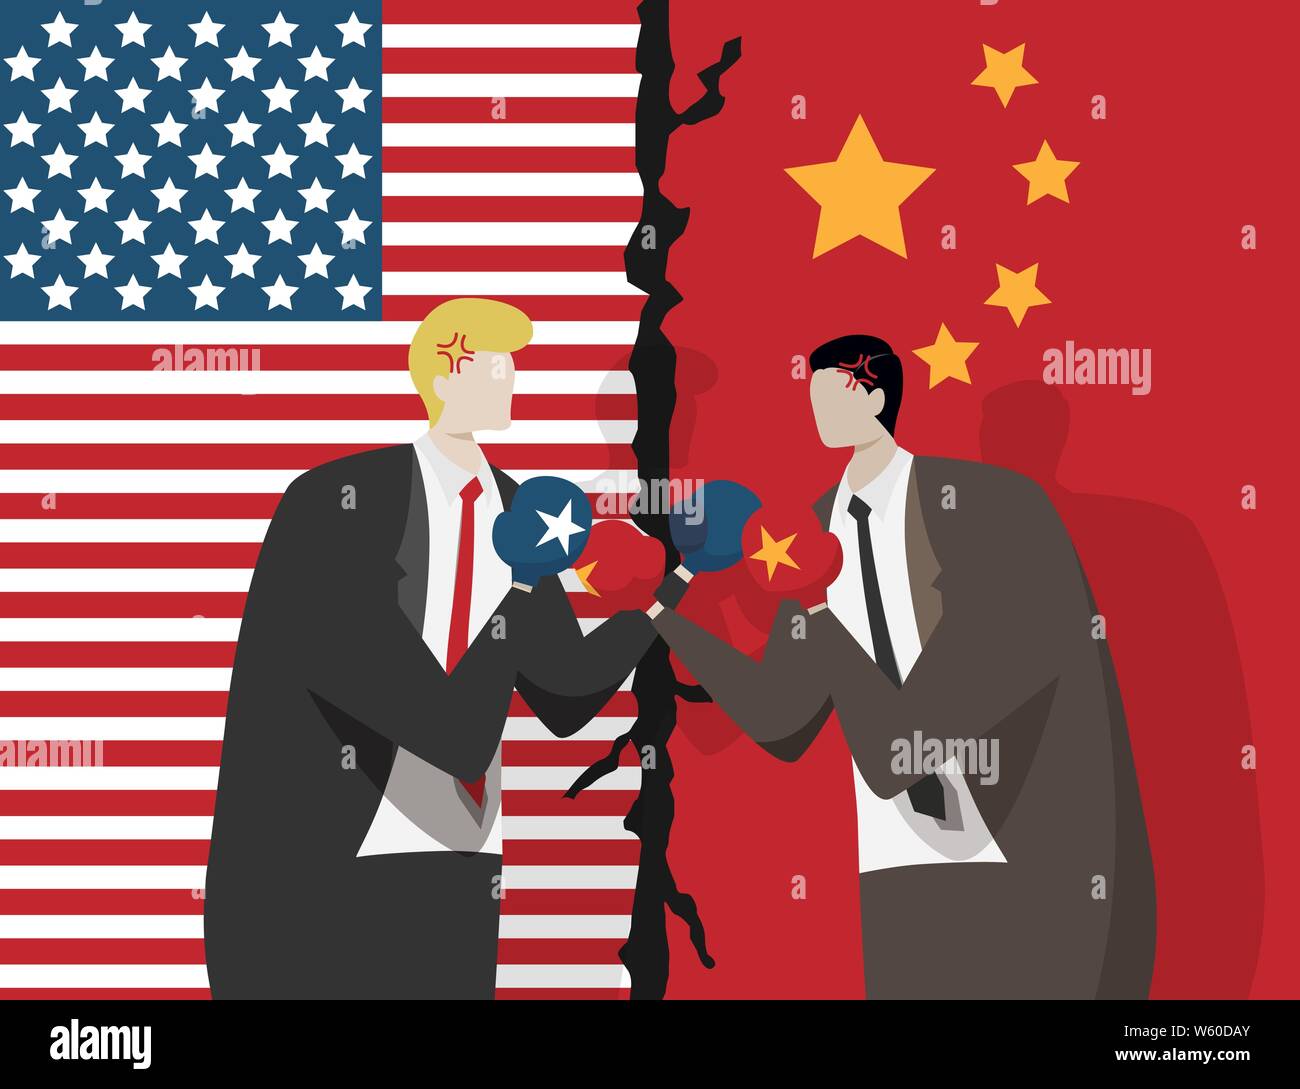 Zwei Geschäftsleute Boxhandschuh für Kampf, Flagge der USA und China im Hintergrund. Handelskrieg zwischen den USA und China Konzept Stock Vektor